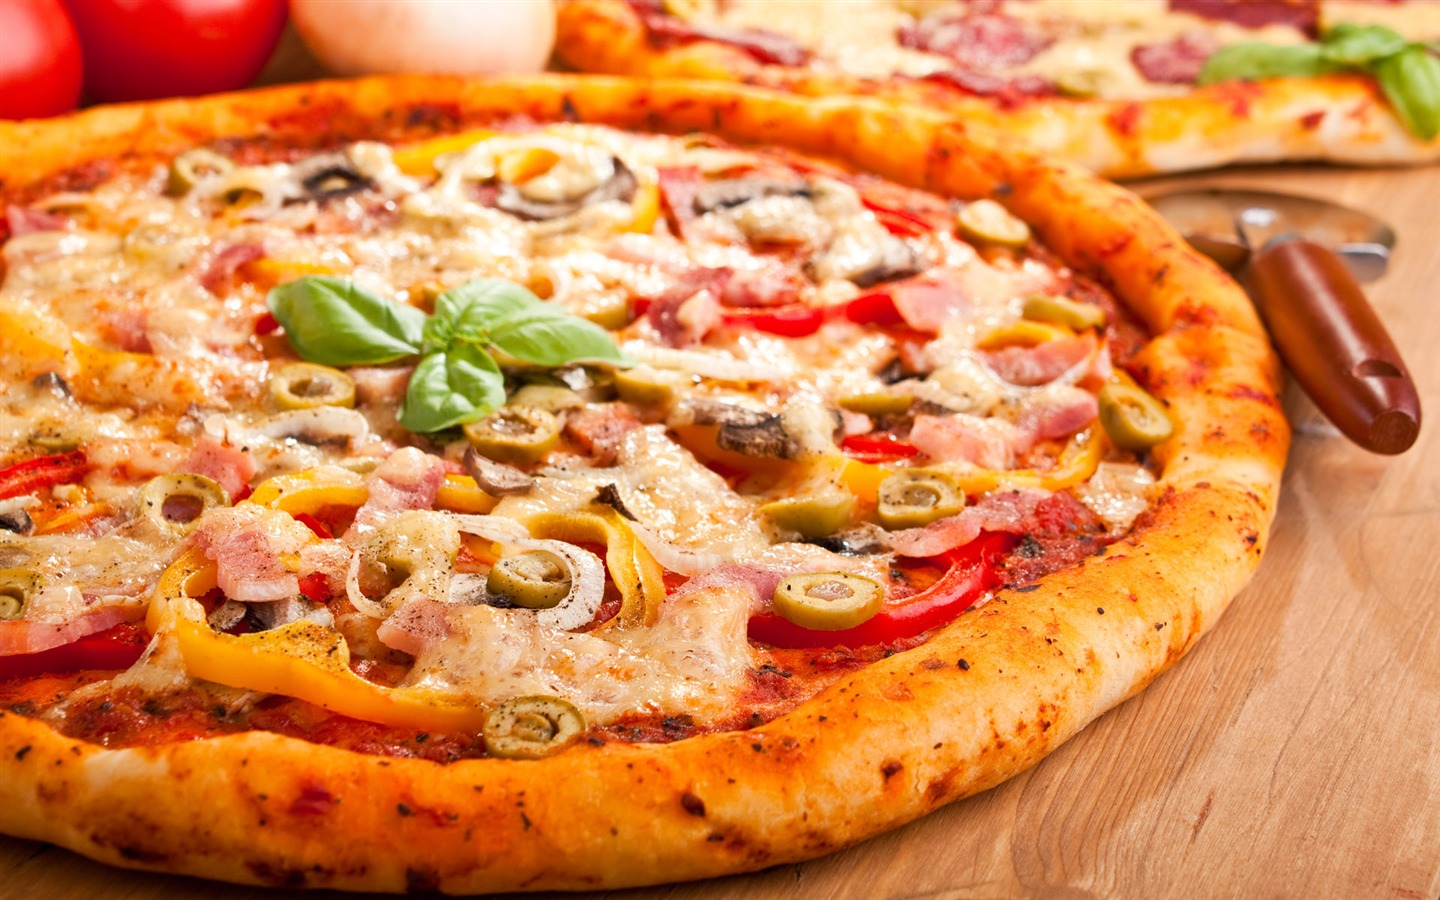 Fondos de pizzerías de Alimentos (4) #20 - 1440x900